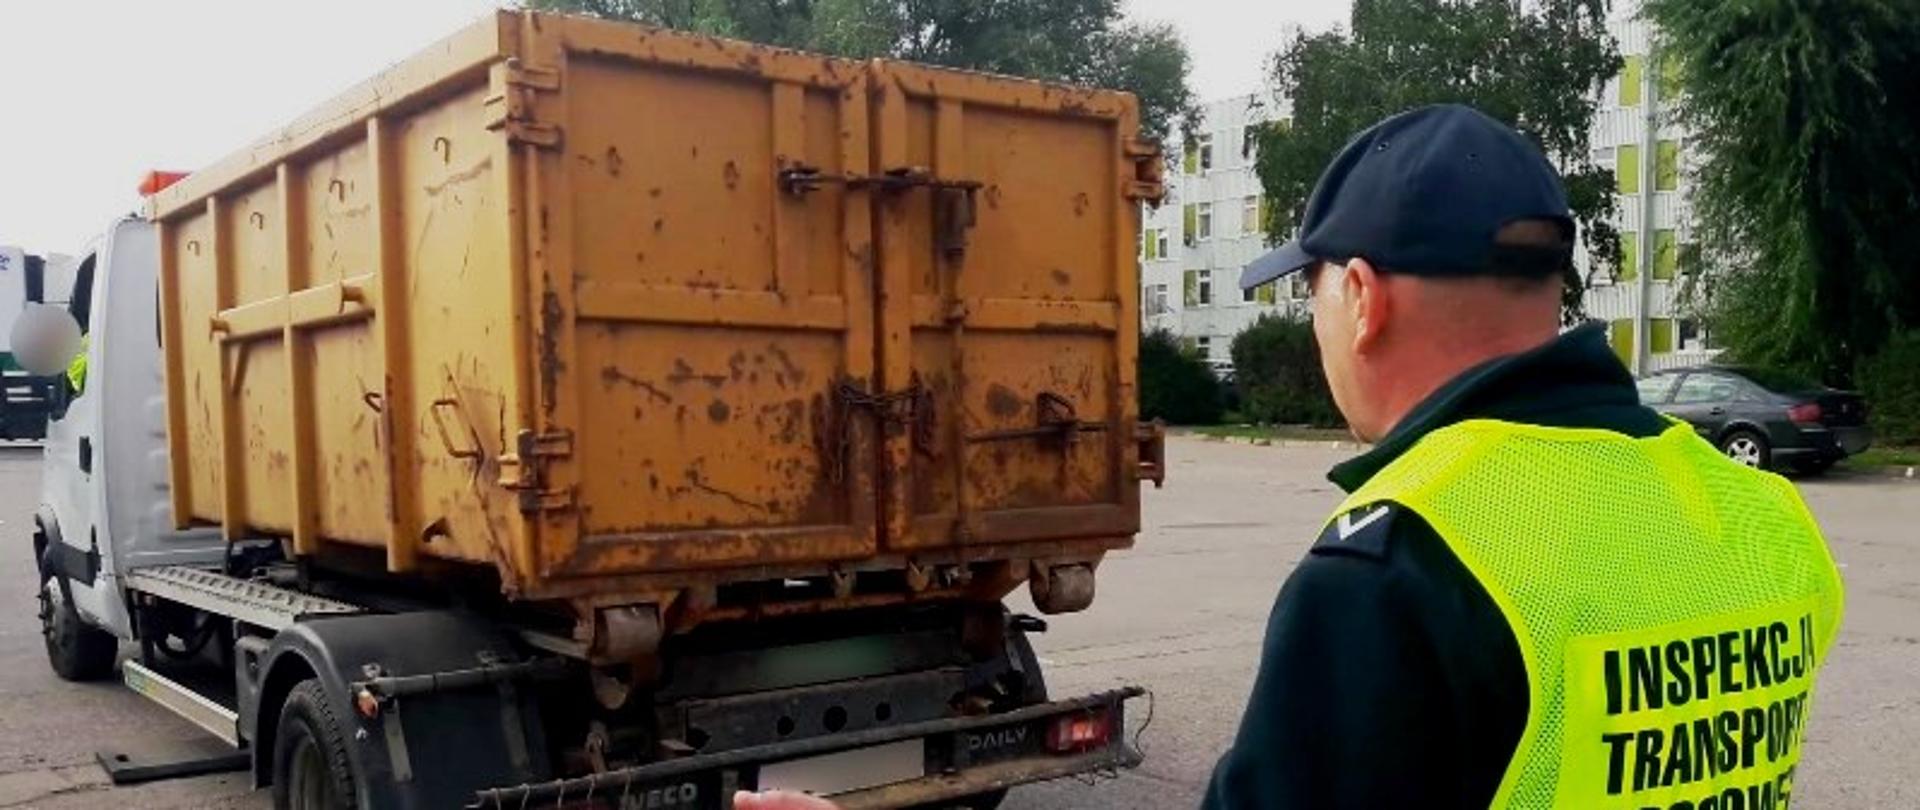 Inspektor ITD w kamizelce odblaskowej stoi za samochodem typu bus z żółtym kontenerem na odpady.